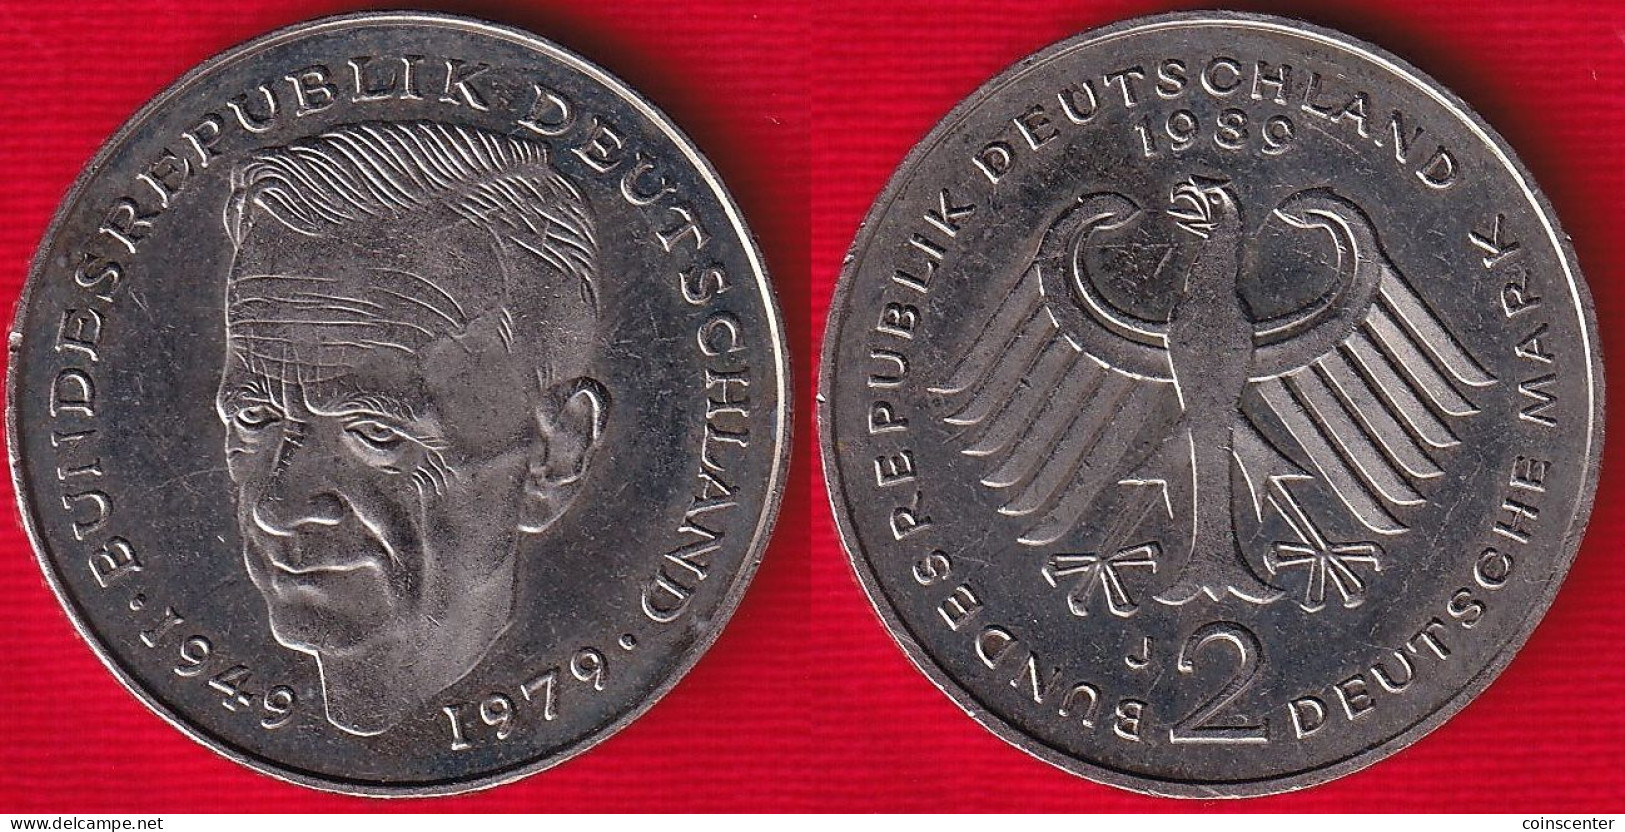 Germany 2 Deutsche Mark (DEM) 1989 J Km#149 "Kurt Schumacher" - 2 Mark